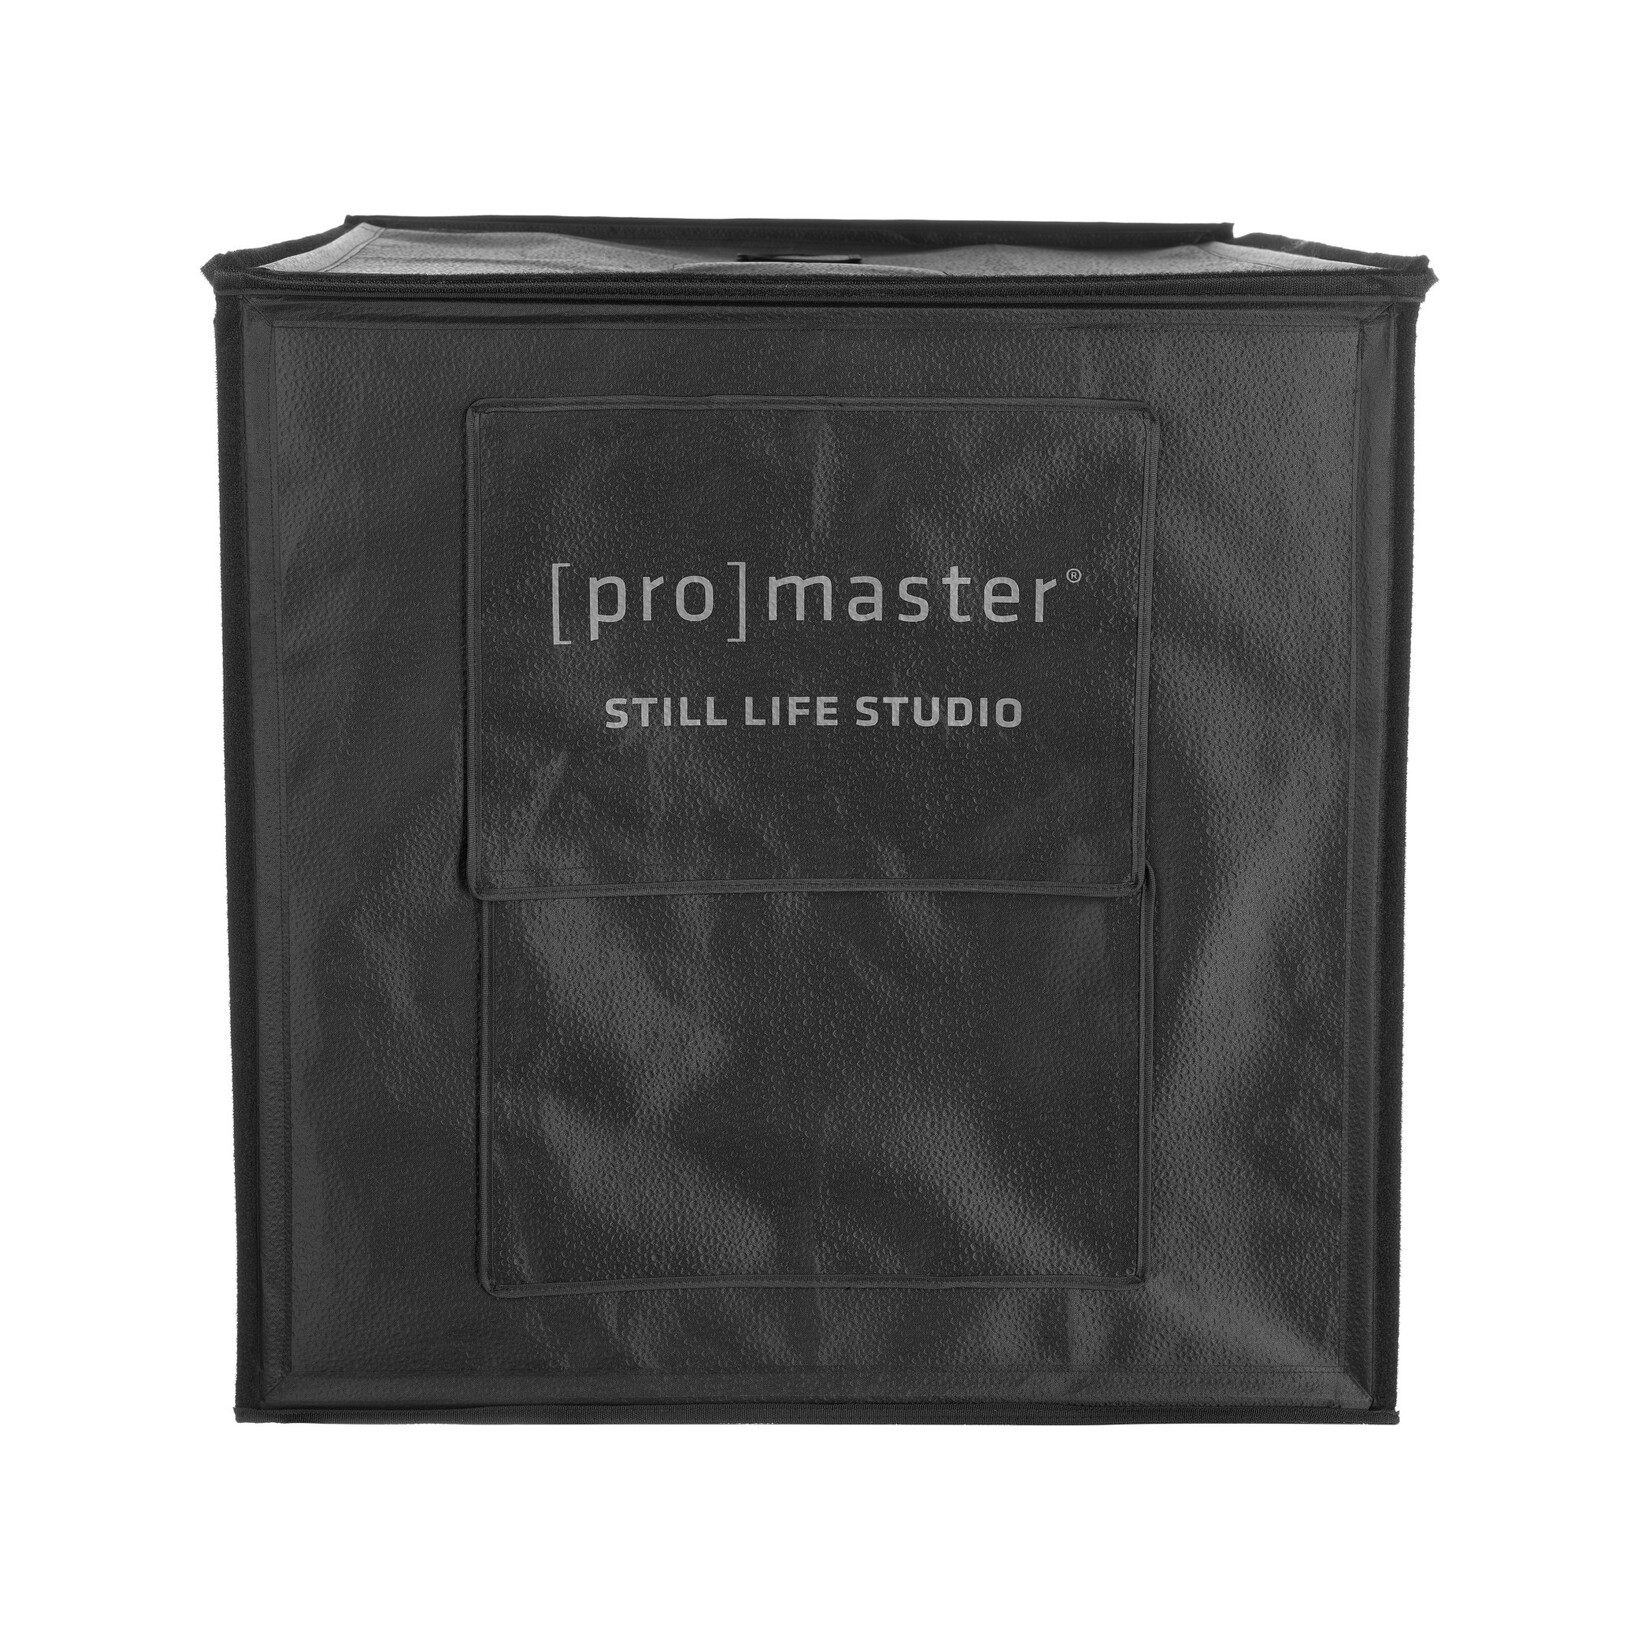 Promaster Still Life Studio v2.0 24in x 24in